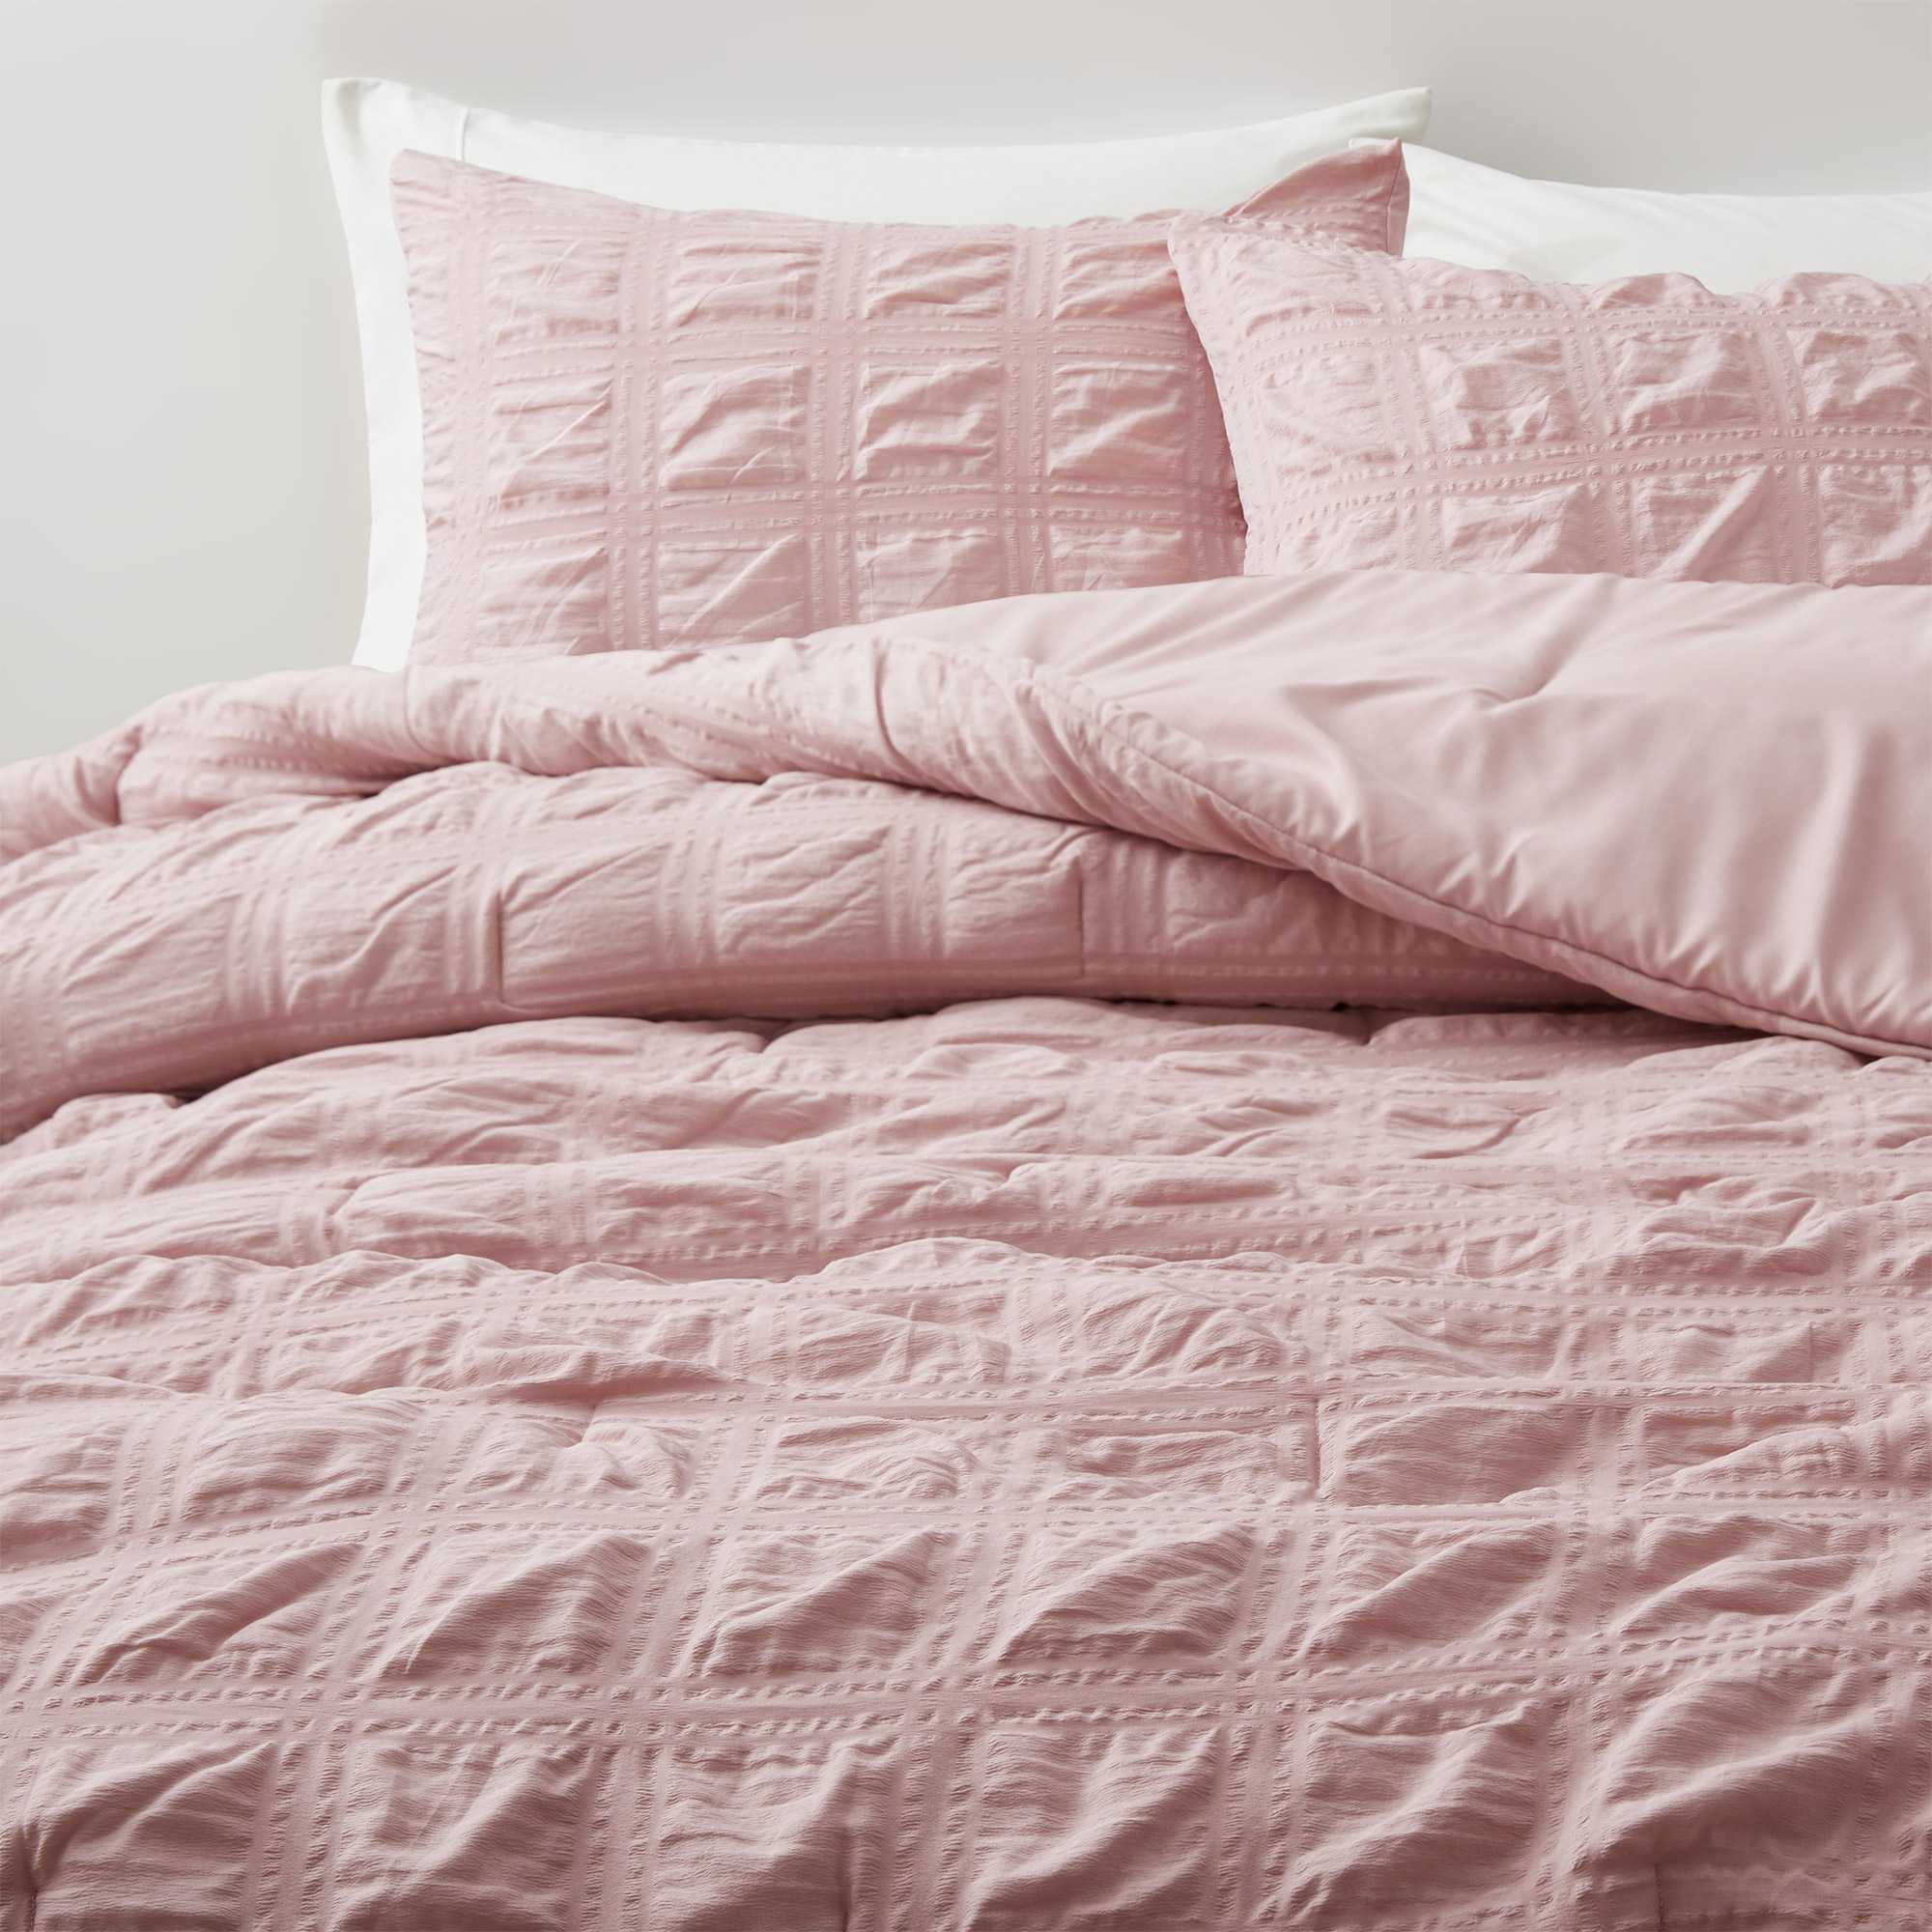 All Season Crinkle Textured Down Alternative Comforter Set-Seersucker Bedding Set - Gray, Full/Queen